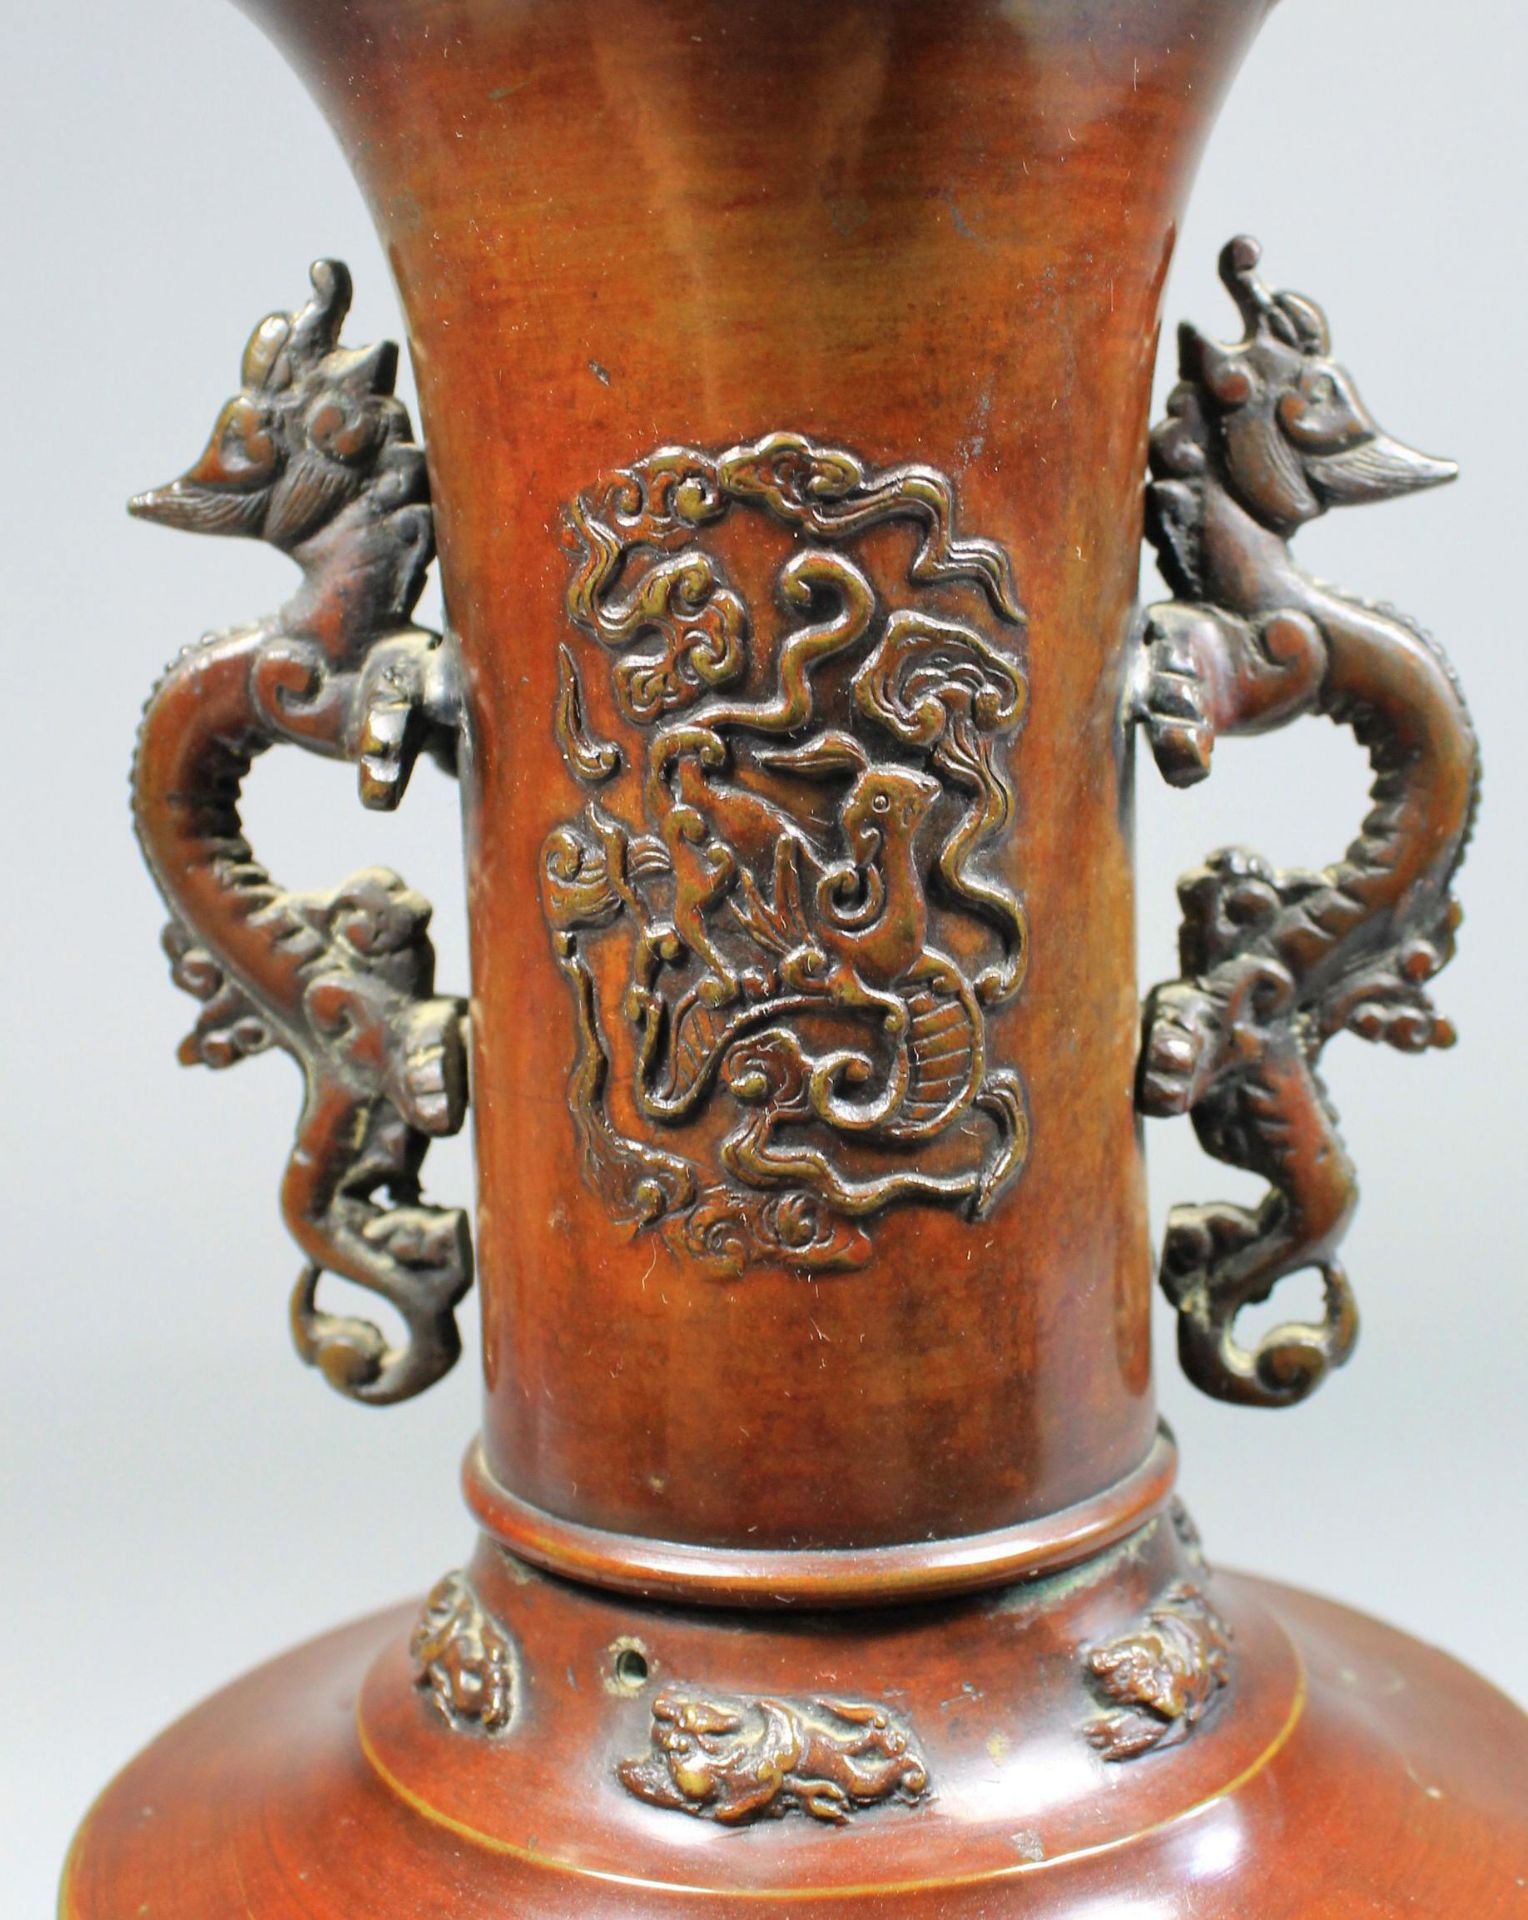 1 Vase Messing, bronziert, mit aufgelegtem asiatischen Reliefdekor, am Hals 2 stilisierte und - Bild 3 aus 4